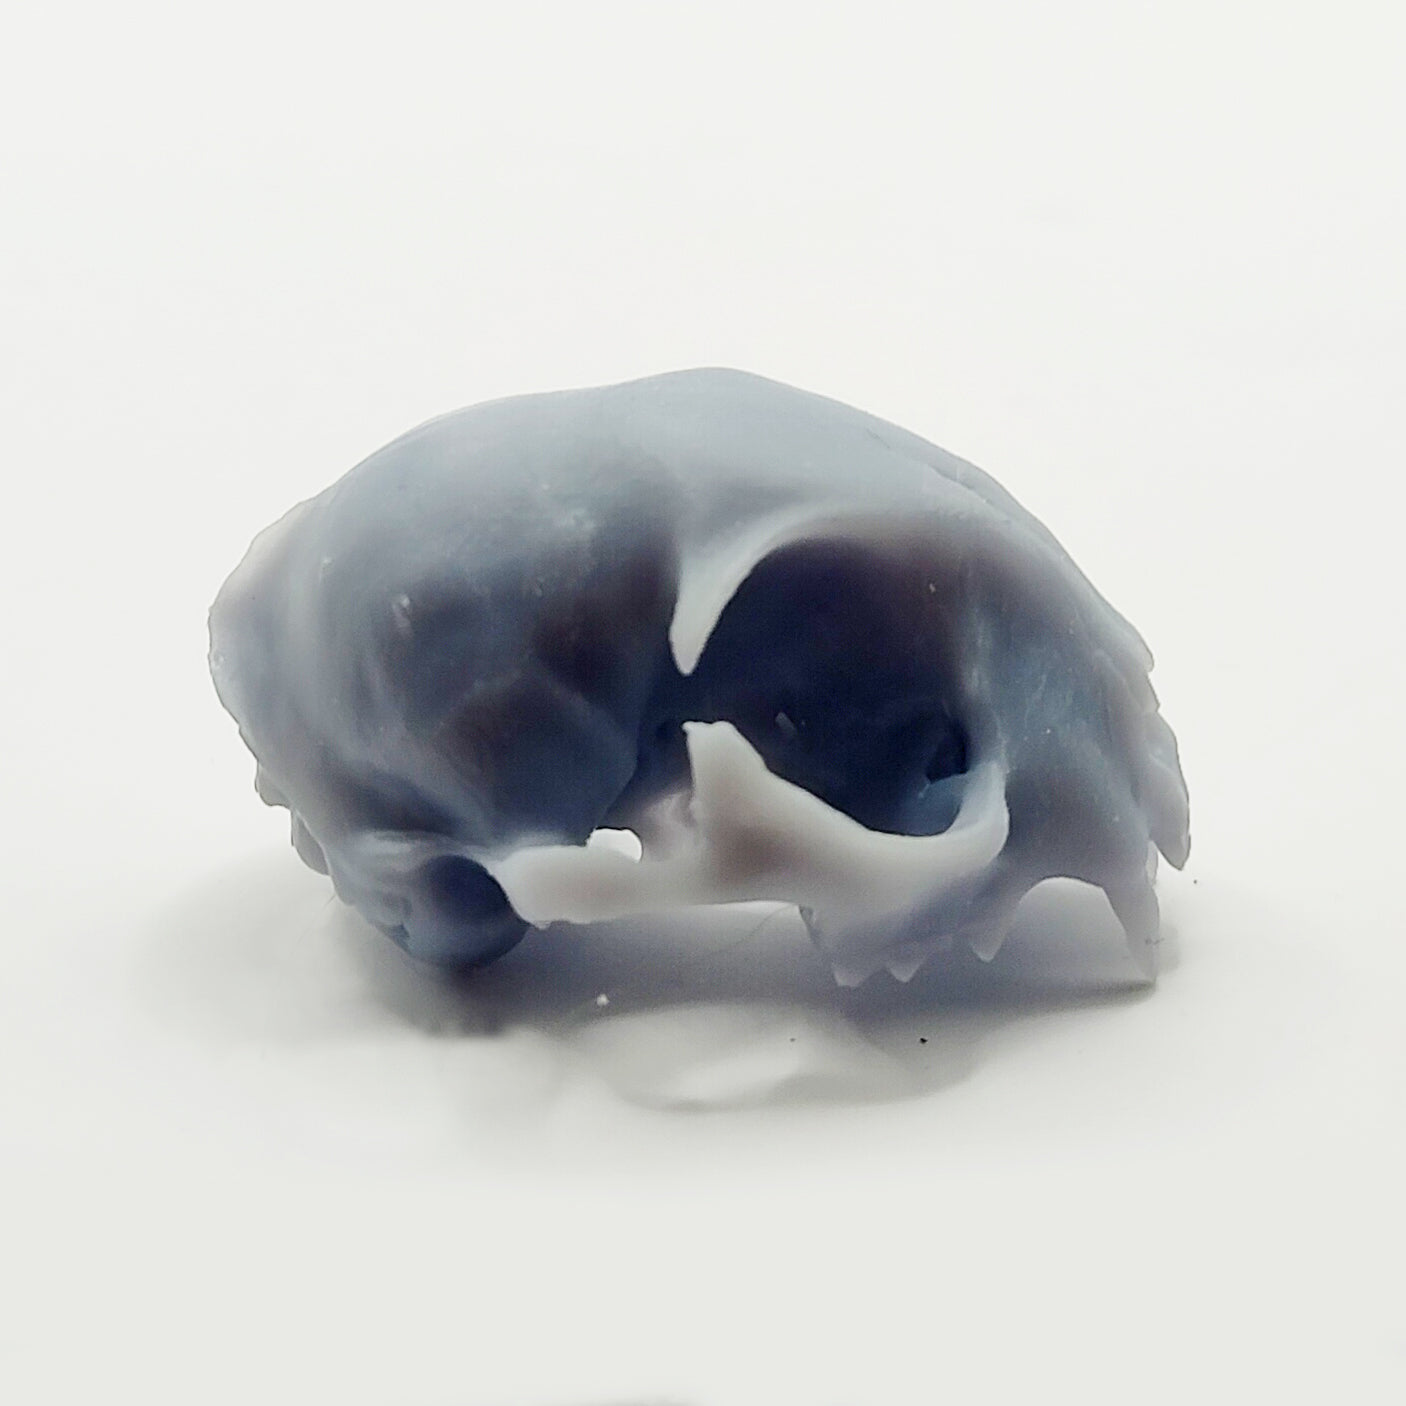 1:6 scale cat cranium in Gray